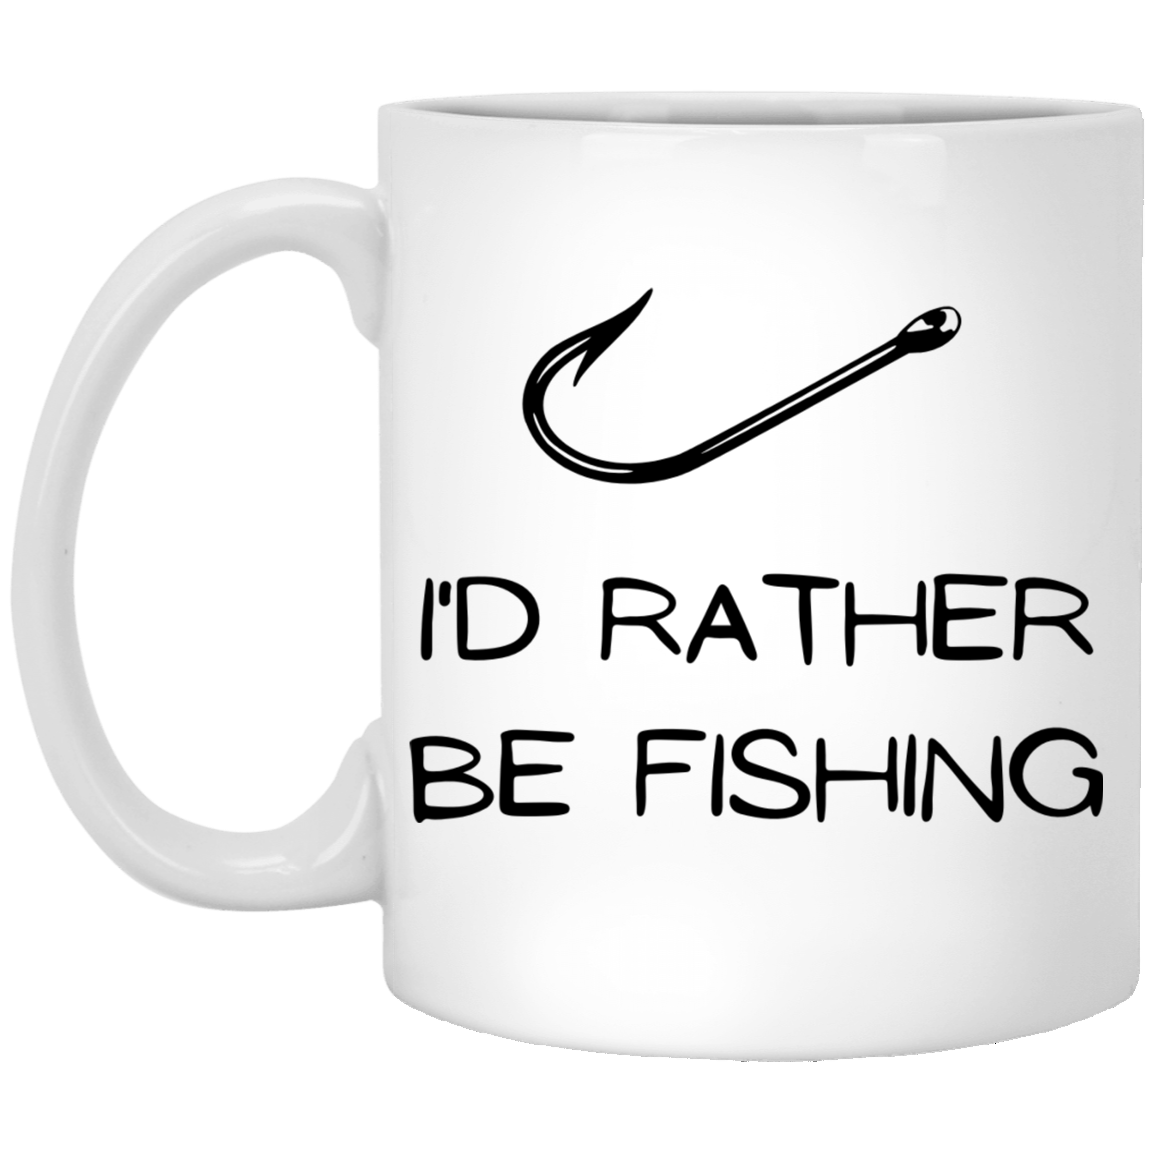 Rather be fishing, White Mug